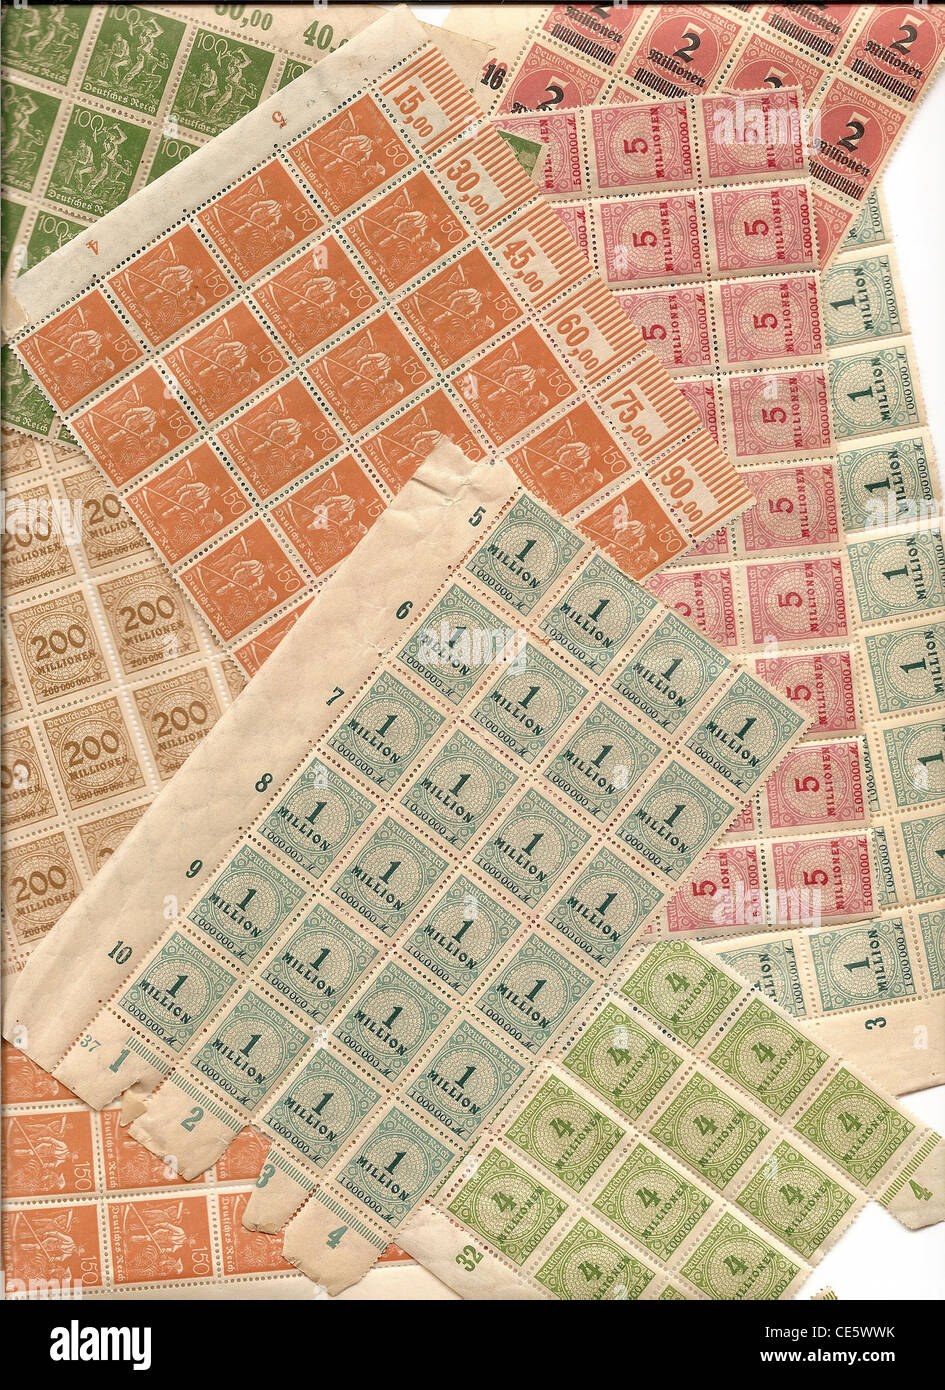 Inflation-Briefmarken aus der Weimarer Republik - Briefmarken Wert von mehreren Millionen Mark Deutch Stockfoto